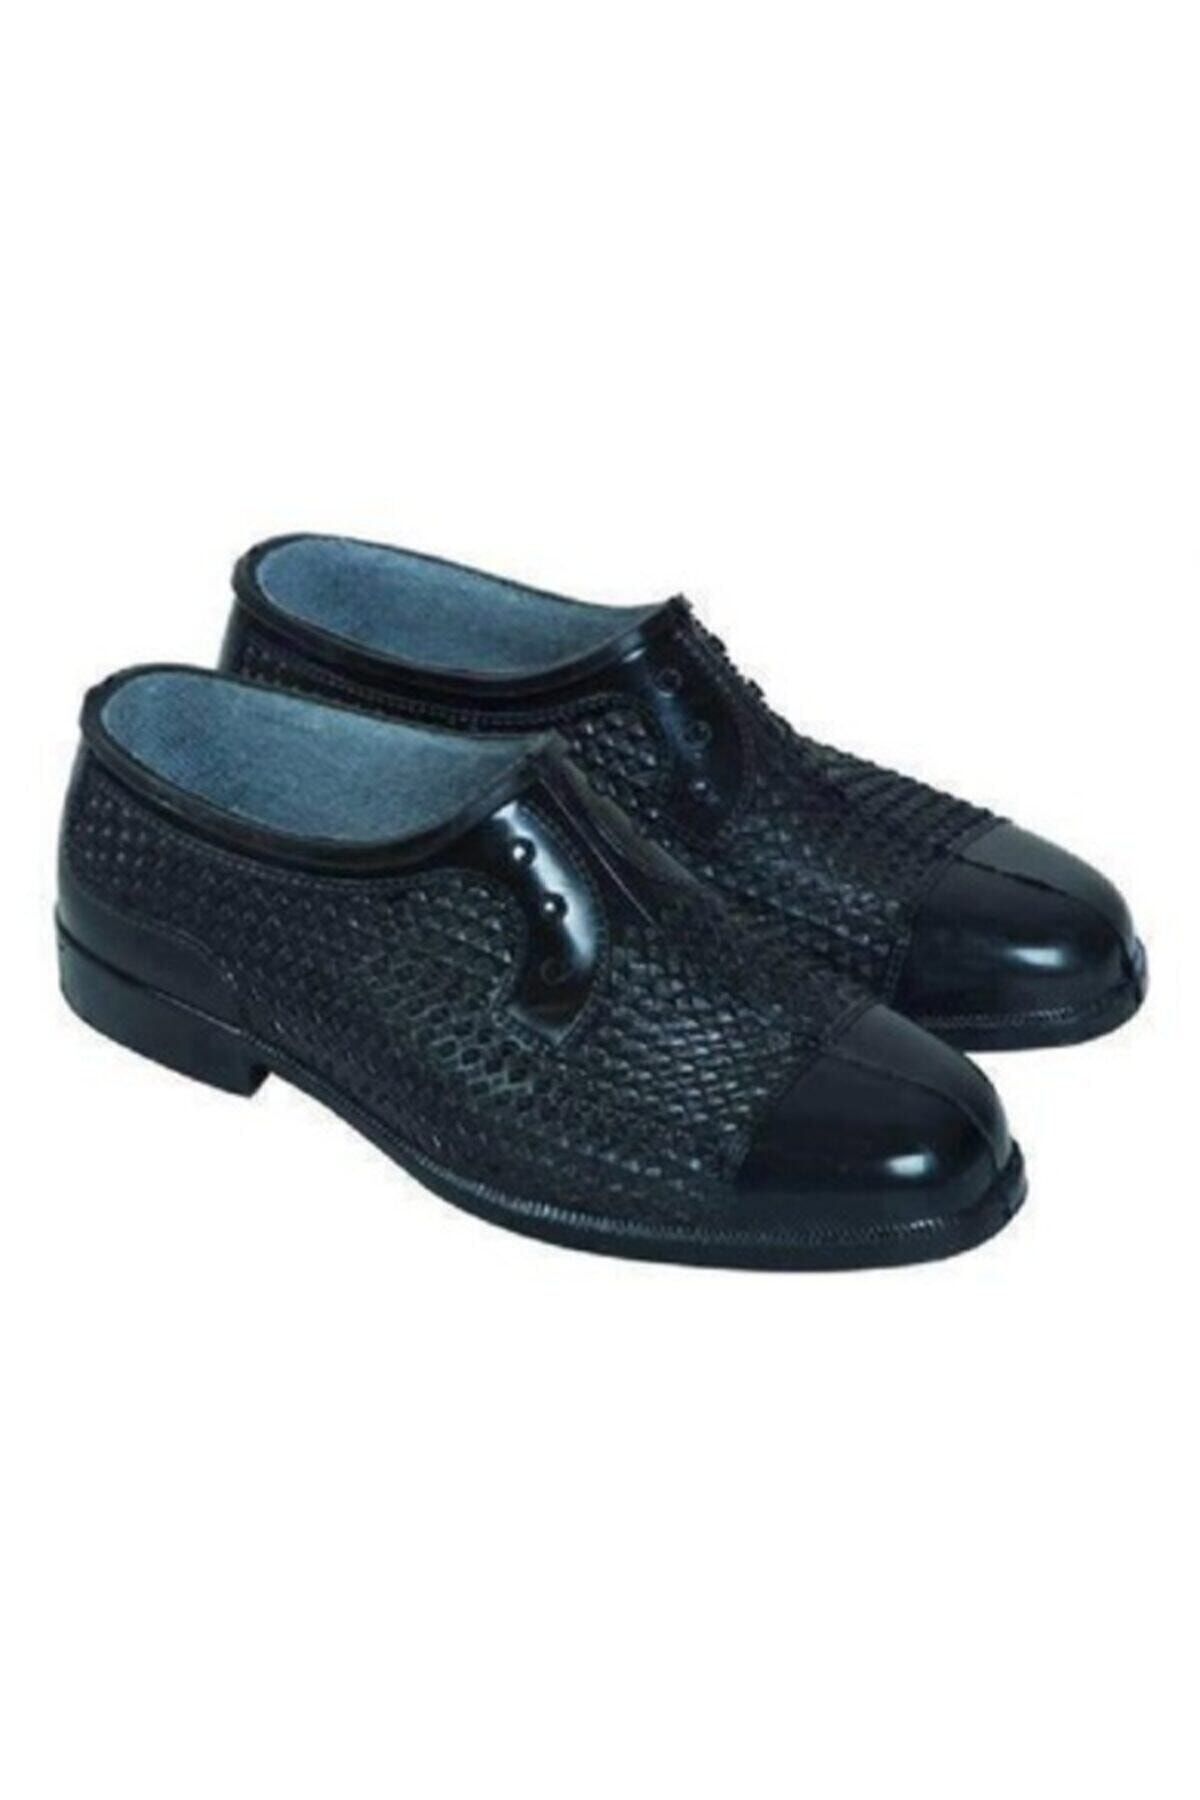 Emek Erkek Siyah Astarlı Lastik Ayakkabı Bağ Bahçe Tarla Lastik Ayakkabı